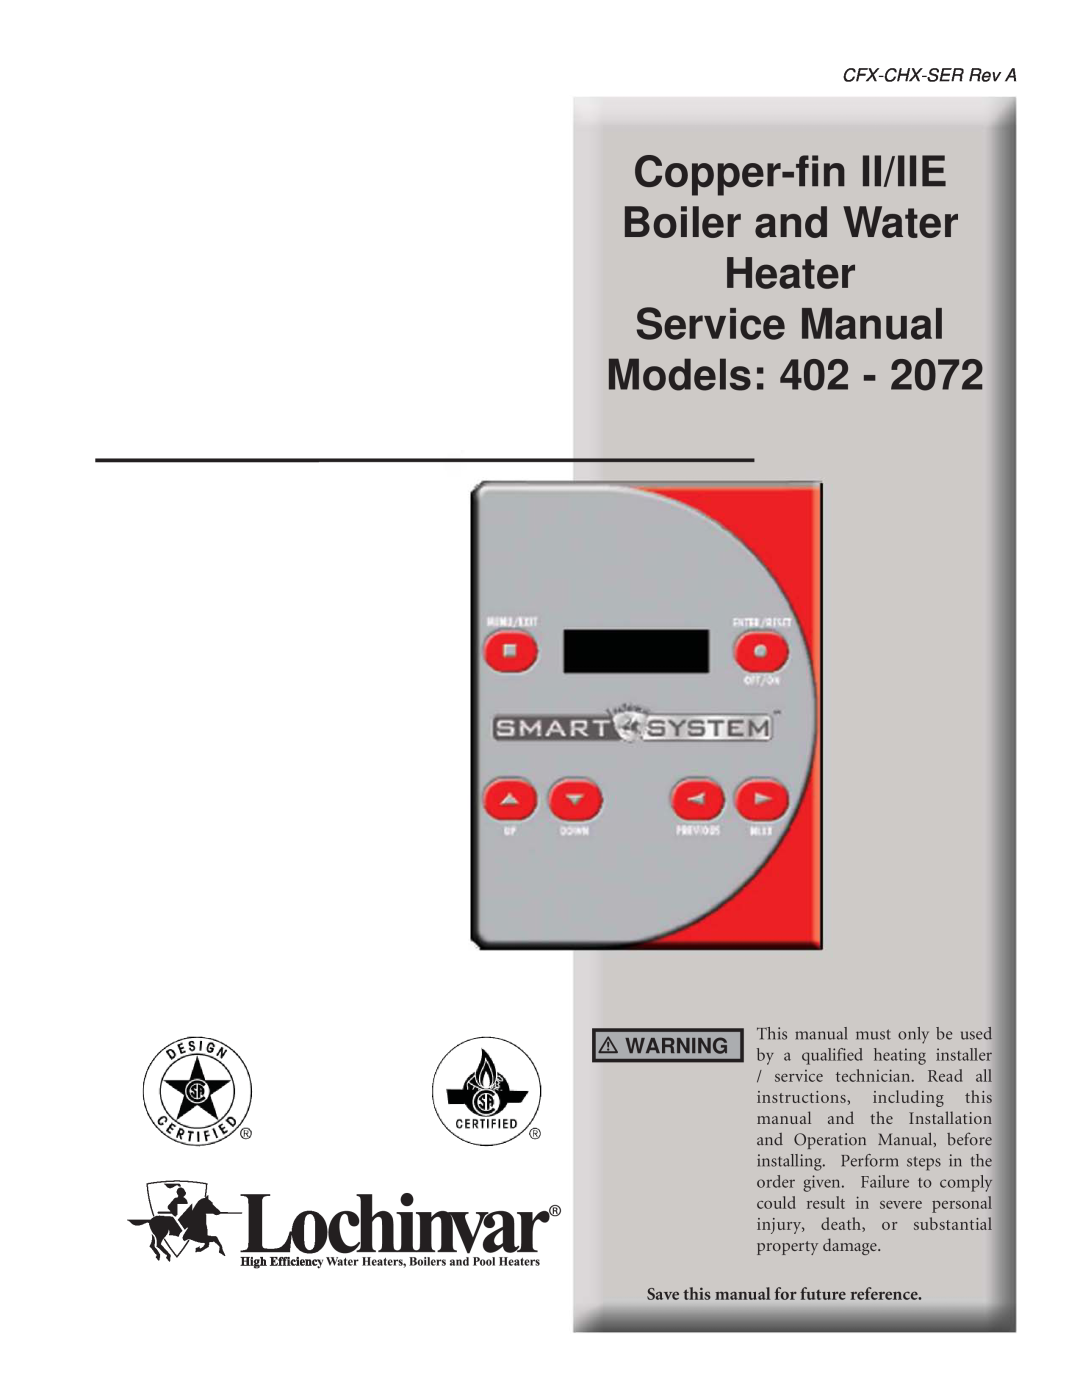 Lochinvar 402, 2072 service manual Copper-finII/IIE Boiler and Water Heater, CFX-CHX-SERRev A 